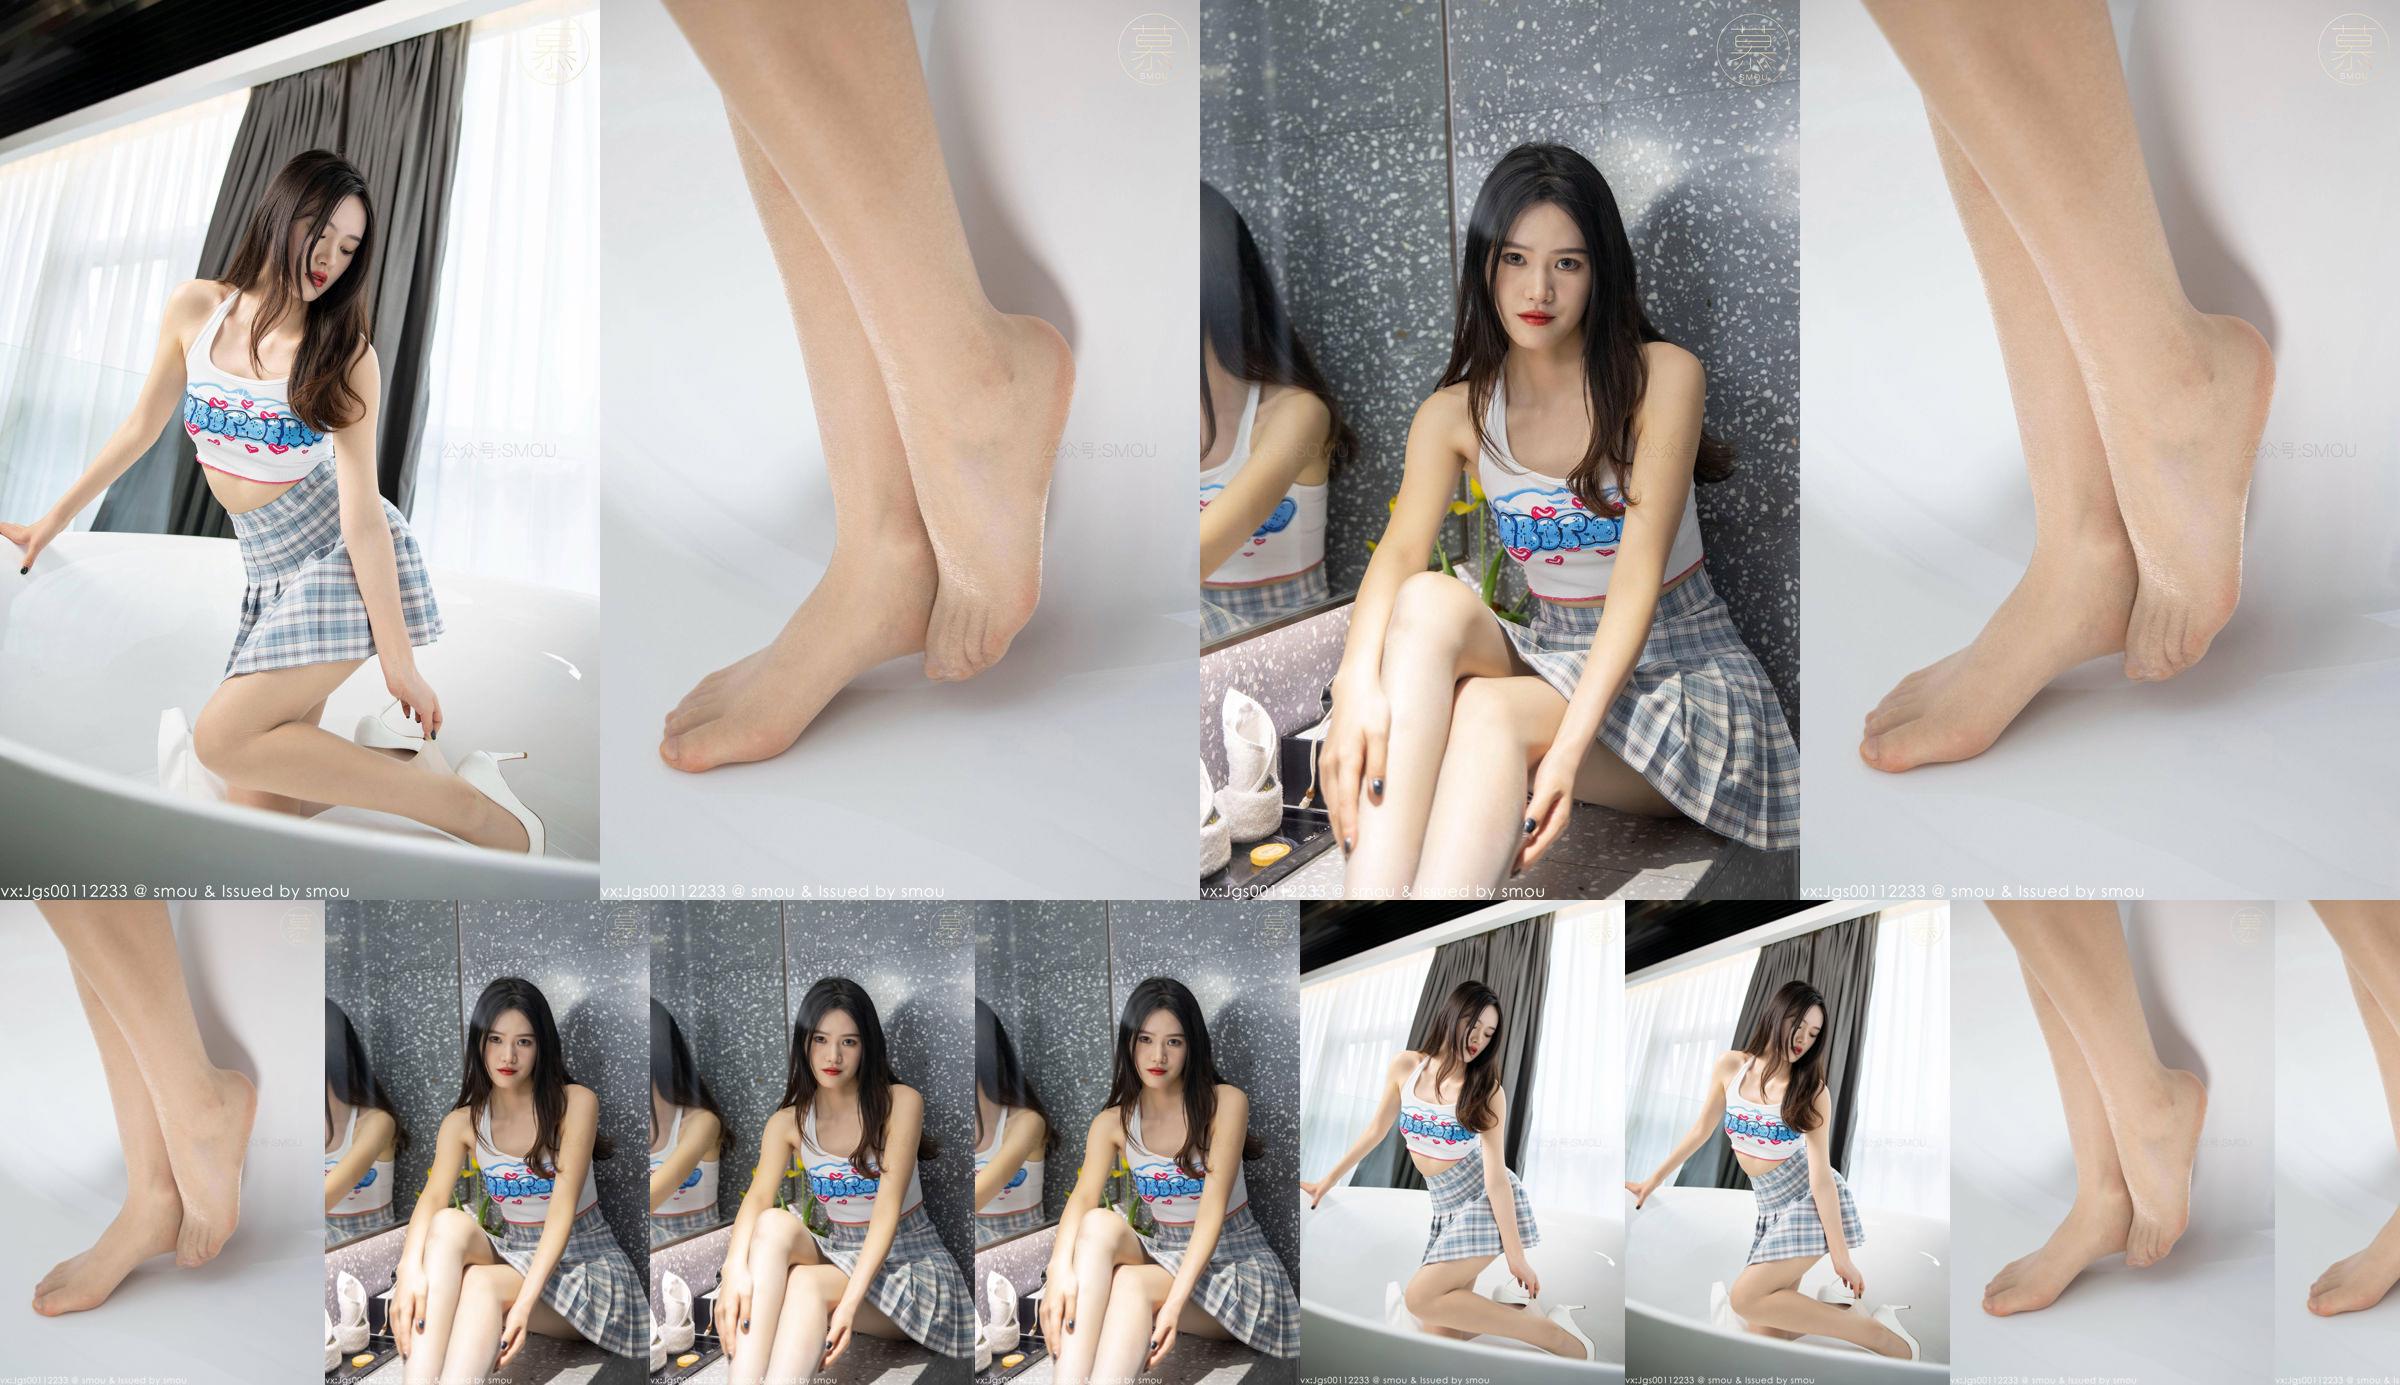 [SMOU] Honey Series M014 Nieuw model Weiwei Panty Mooie beenbedekking No.c570e0 Pagina 1